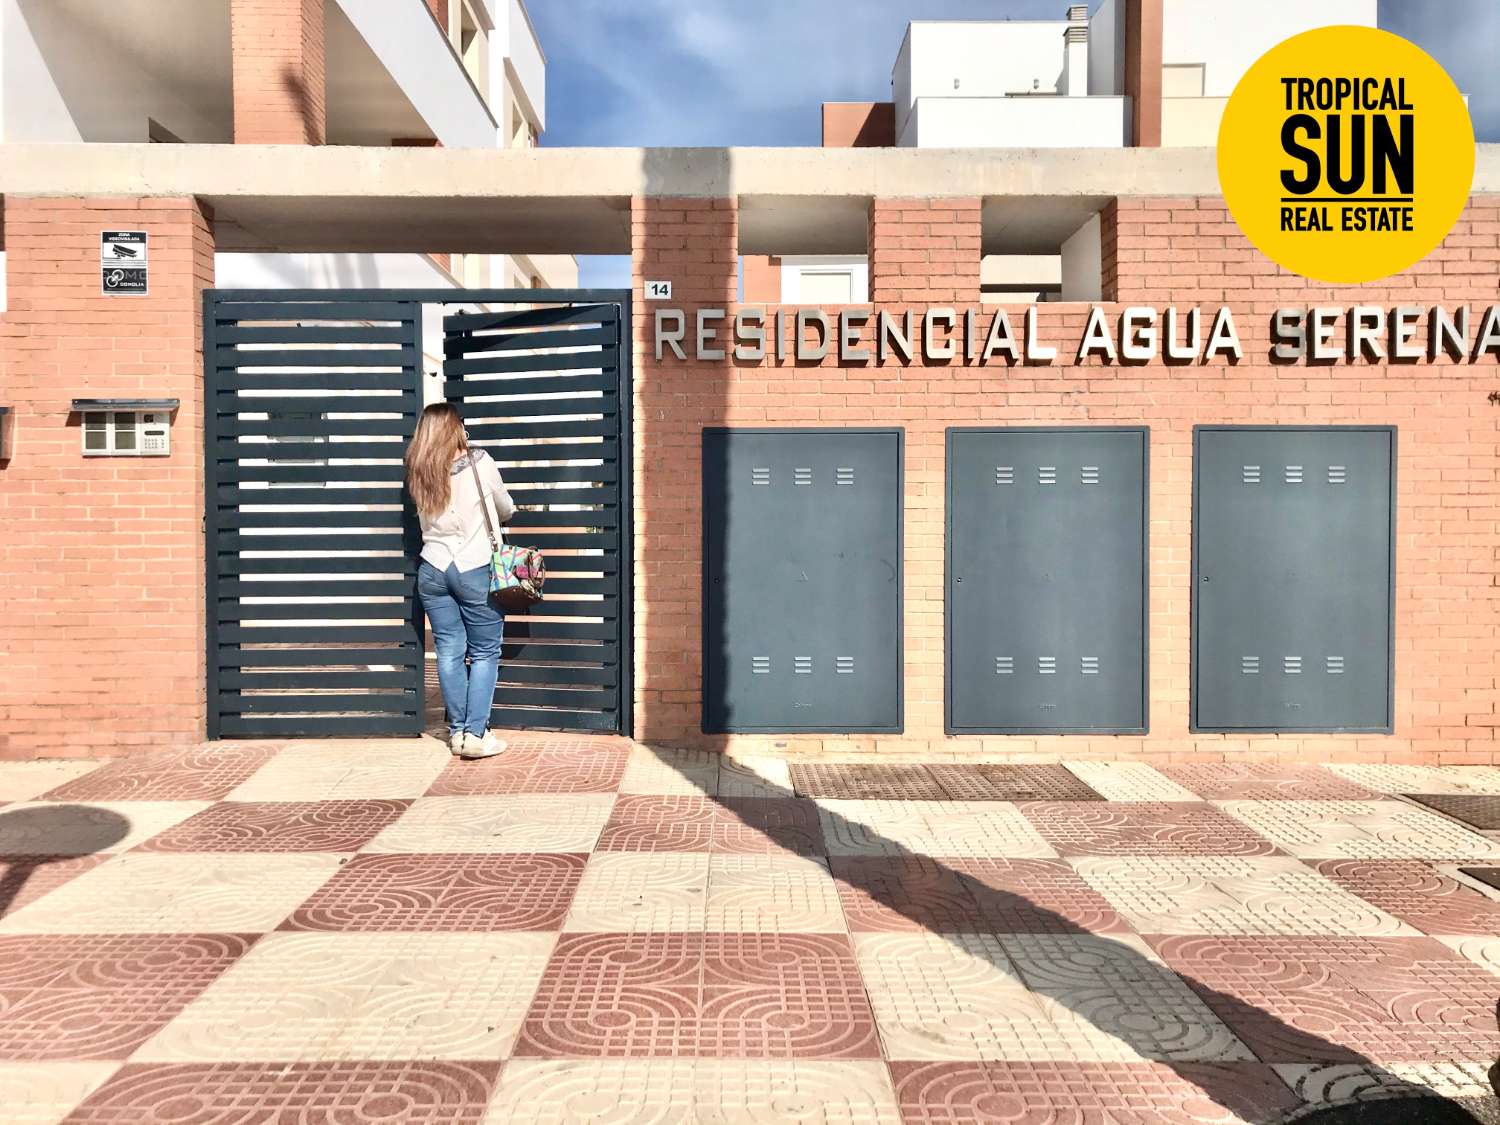 Ontdek het paradijs in Roquetas de Mar: Mooi huis met 3 slaapkamers in de woonwijk Aguaserena